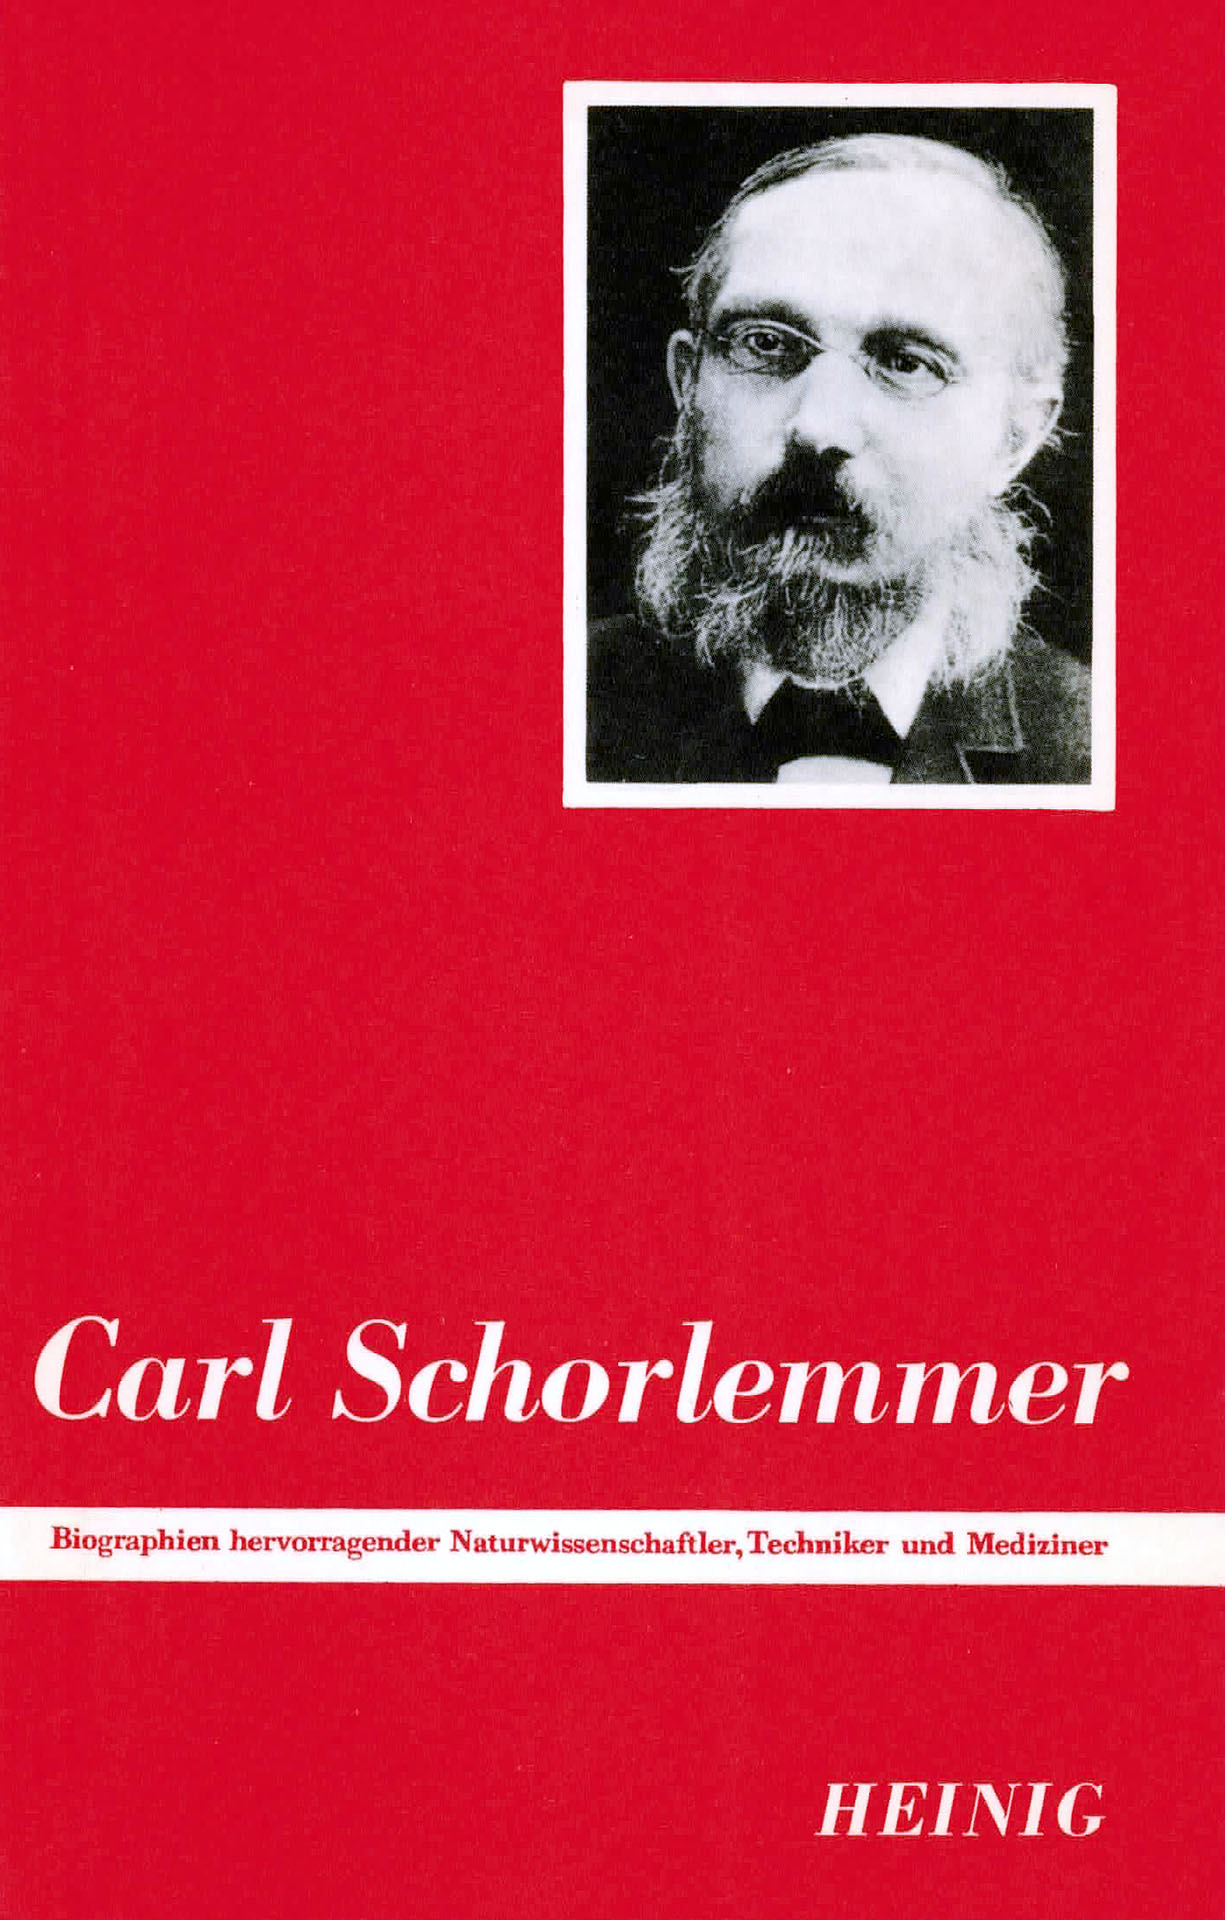 Carl Schorlemmer - Heinig, Dr. Karl